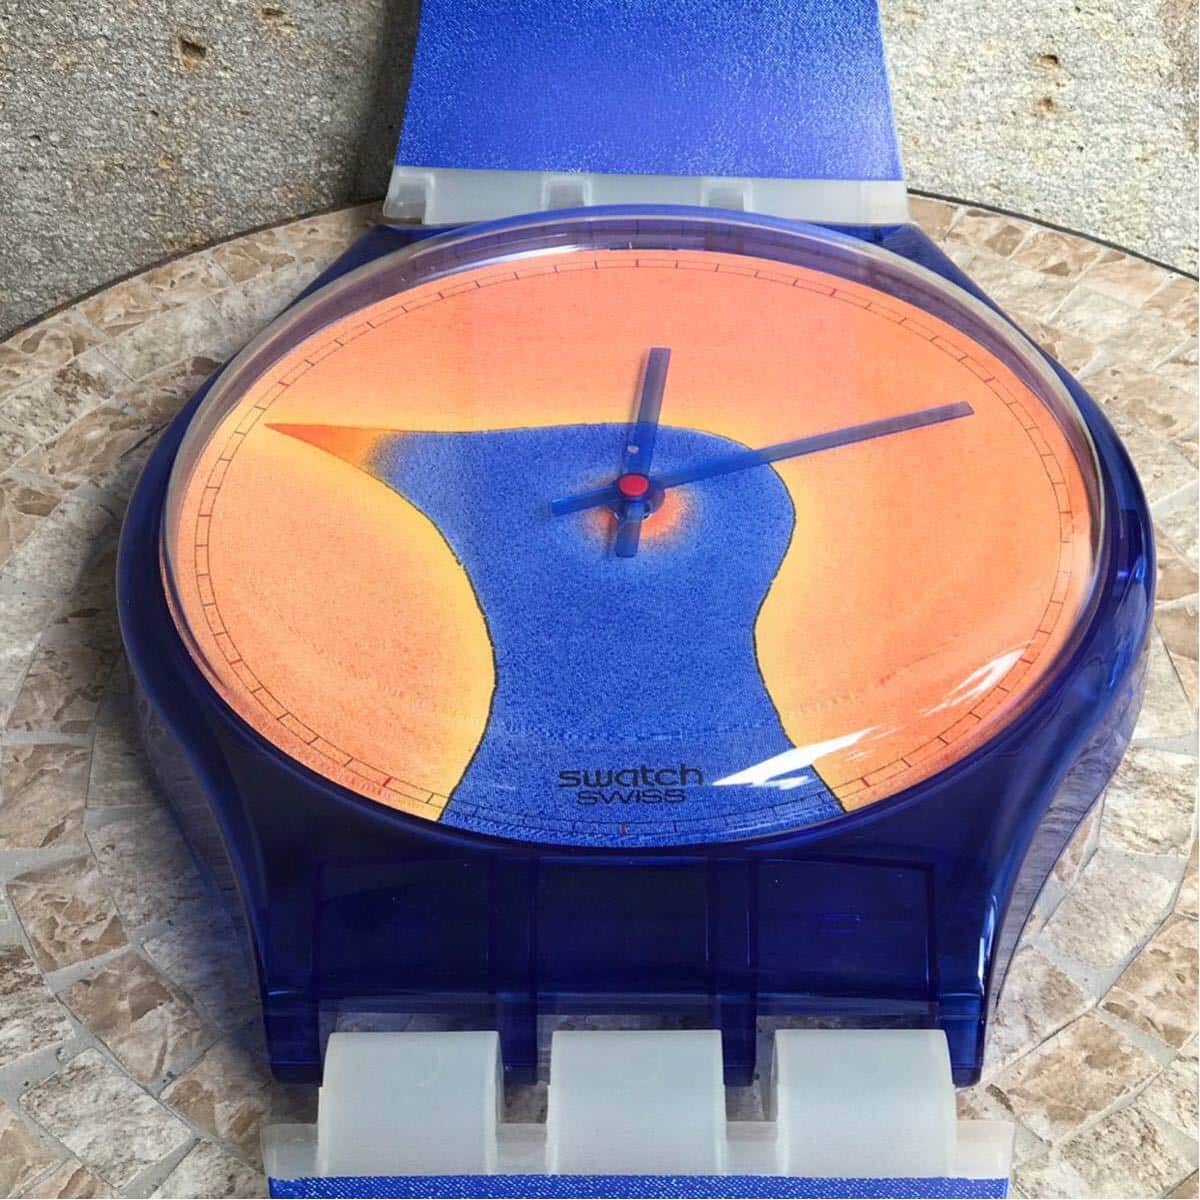 New]MAXI Swatch FOLON Early 1990 Art Watch 2.1m MGZ 001 - BE 